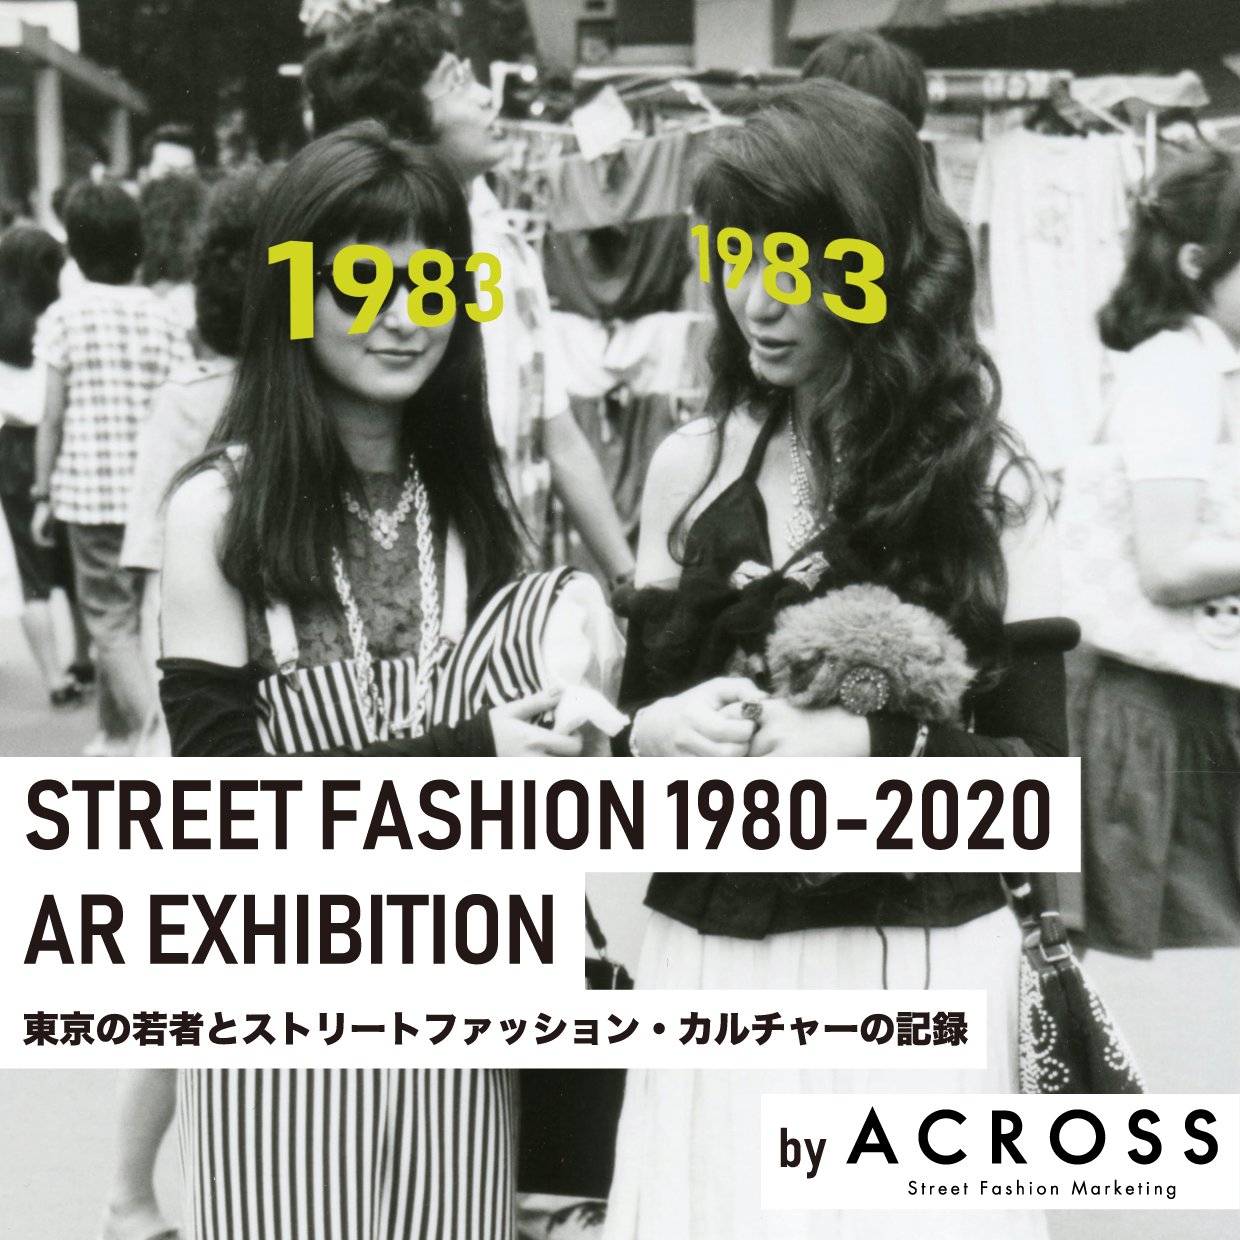 渋谷parco 開催中 ストリートファッション1980 Ar展 By Across Parco 渋谷パルコ立体街路 4f広場 屋外 Across編集室が撮影してきたスナップの数々を スマートフォンのarを活用して 各時代のファッションに身を包んだ若者たちの姿を展示